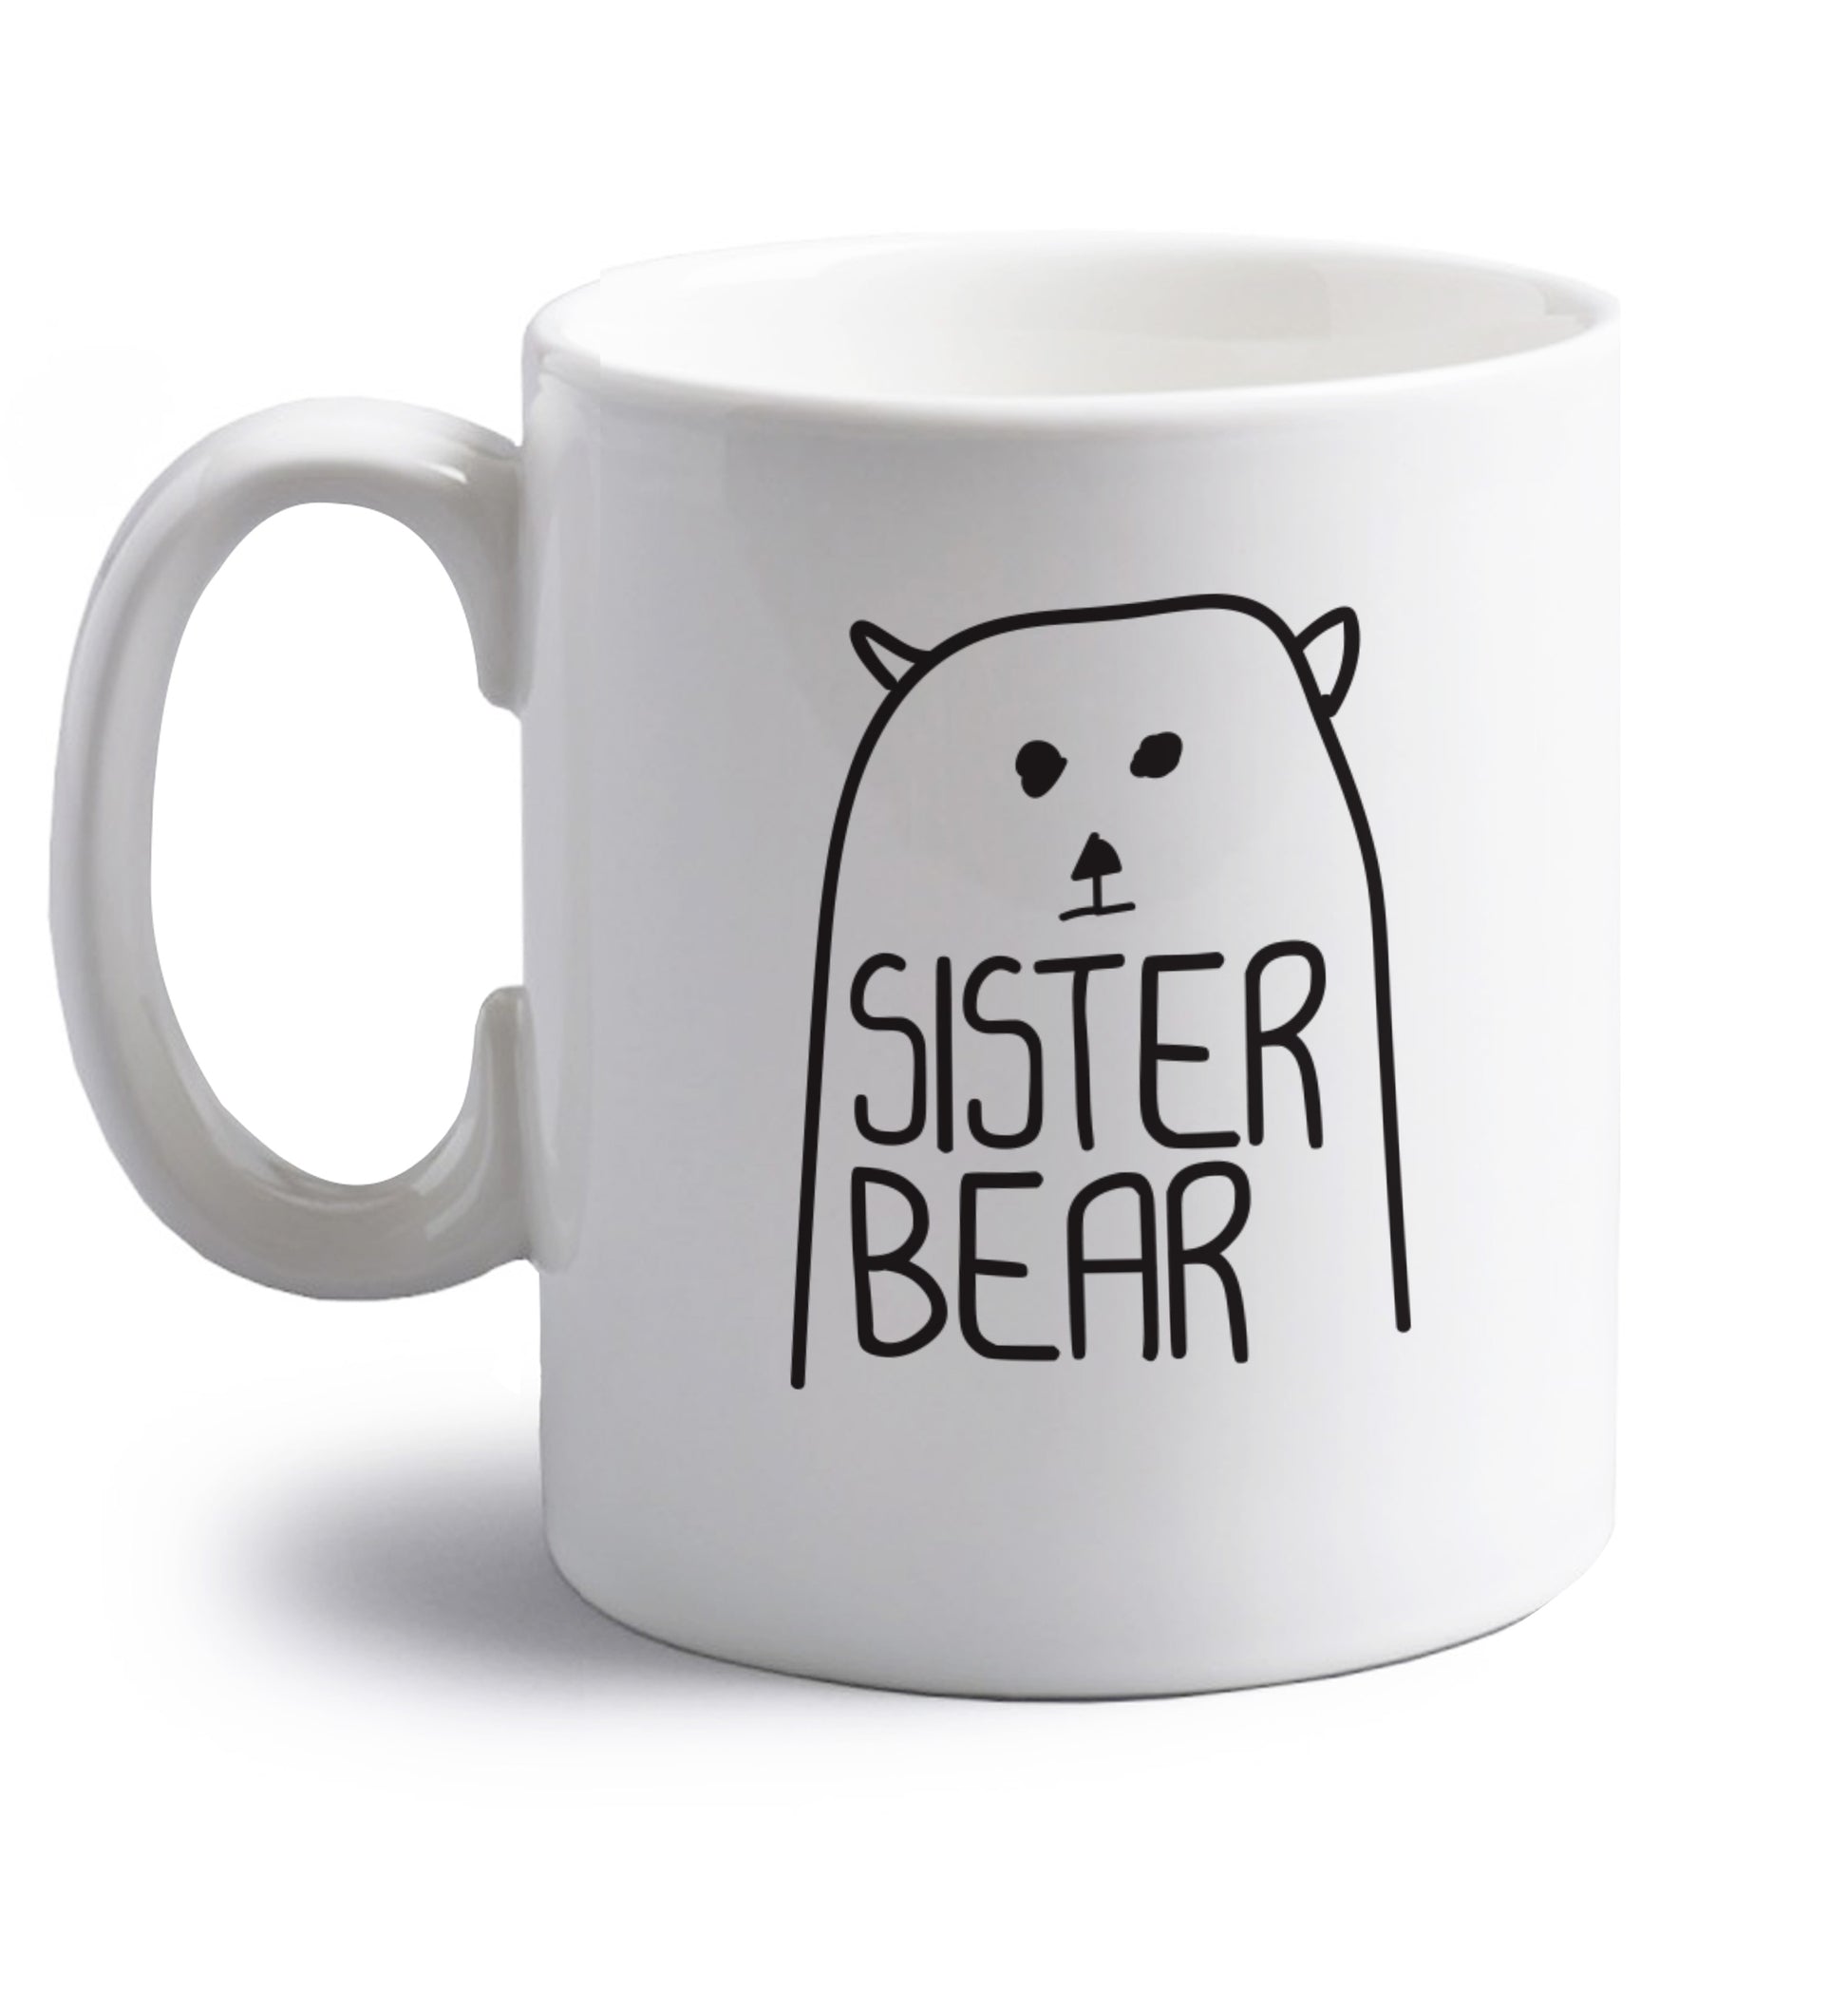 Sister bear right handed white ceramic mug 